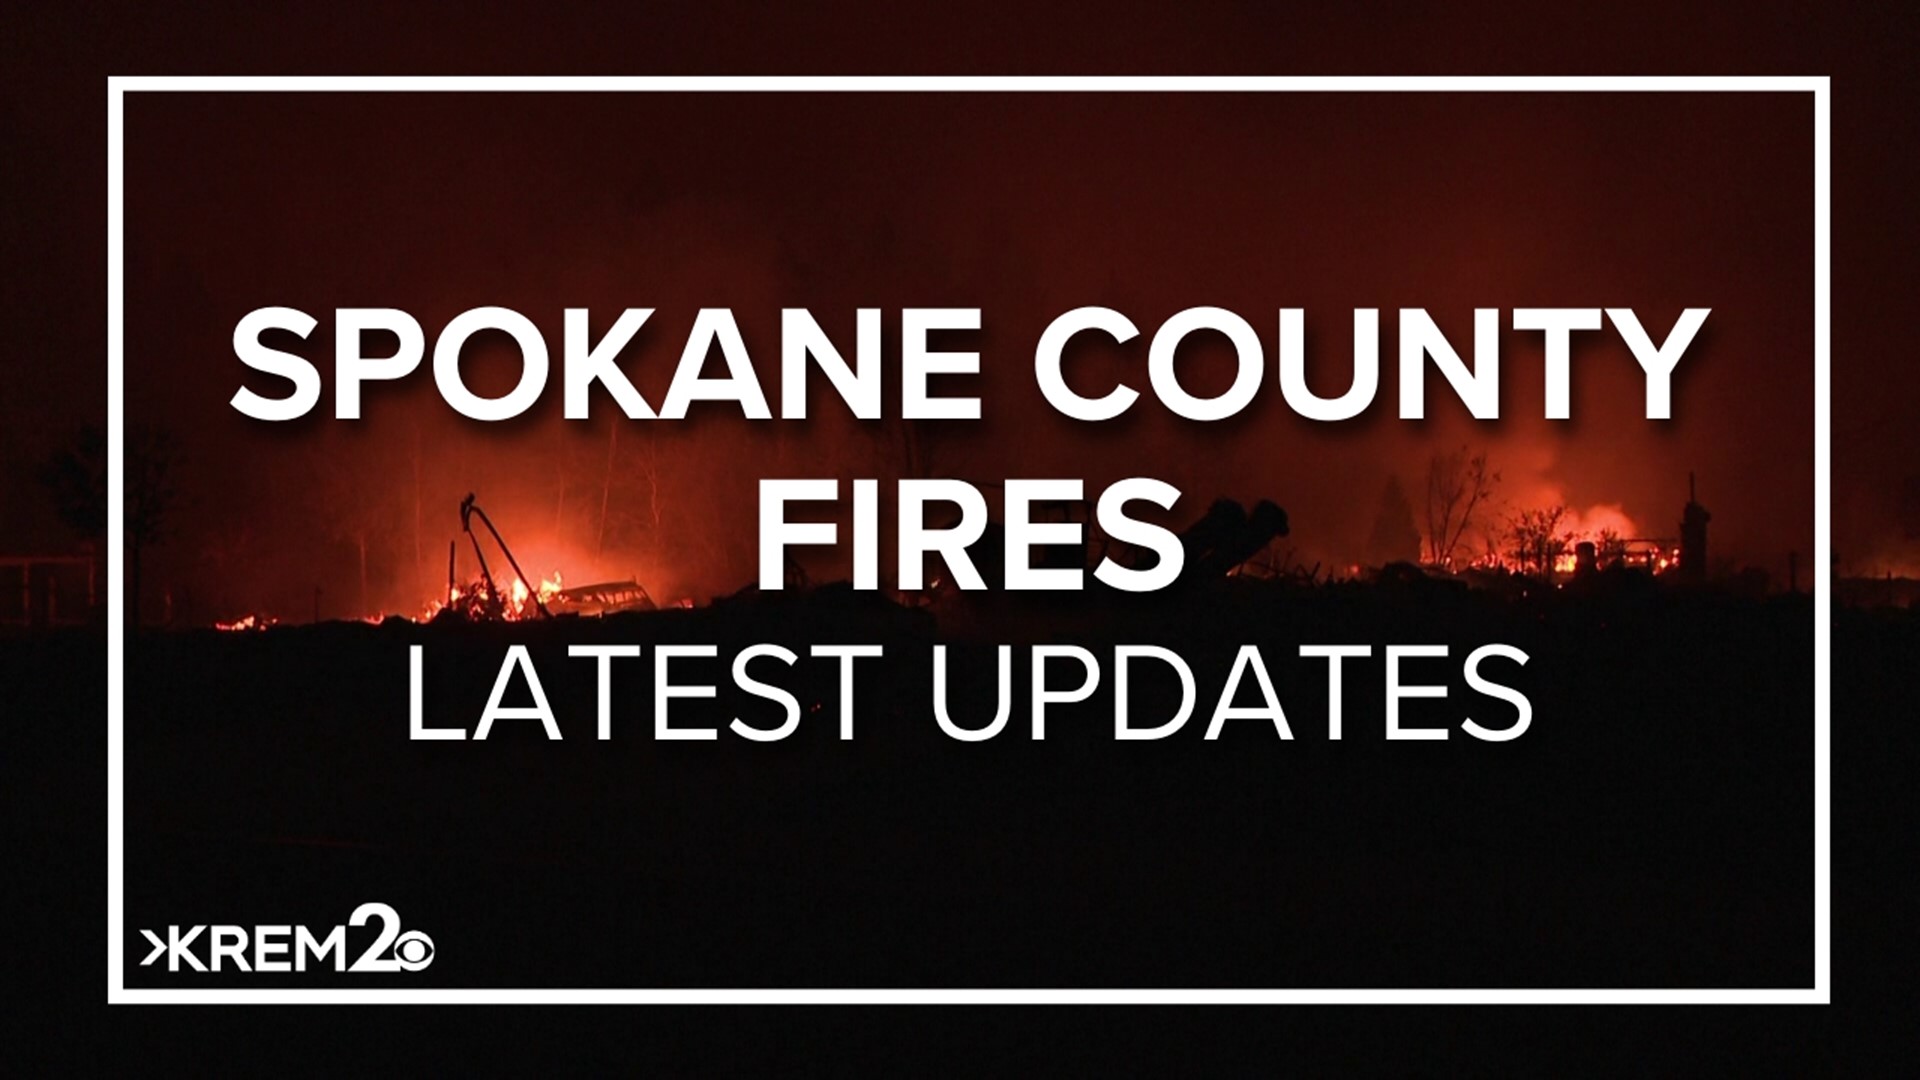 KREM 2 News is delivering team coverage after several Spokane County wildfires displaced hundreds of people